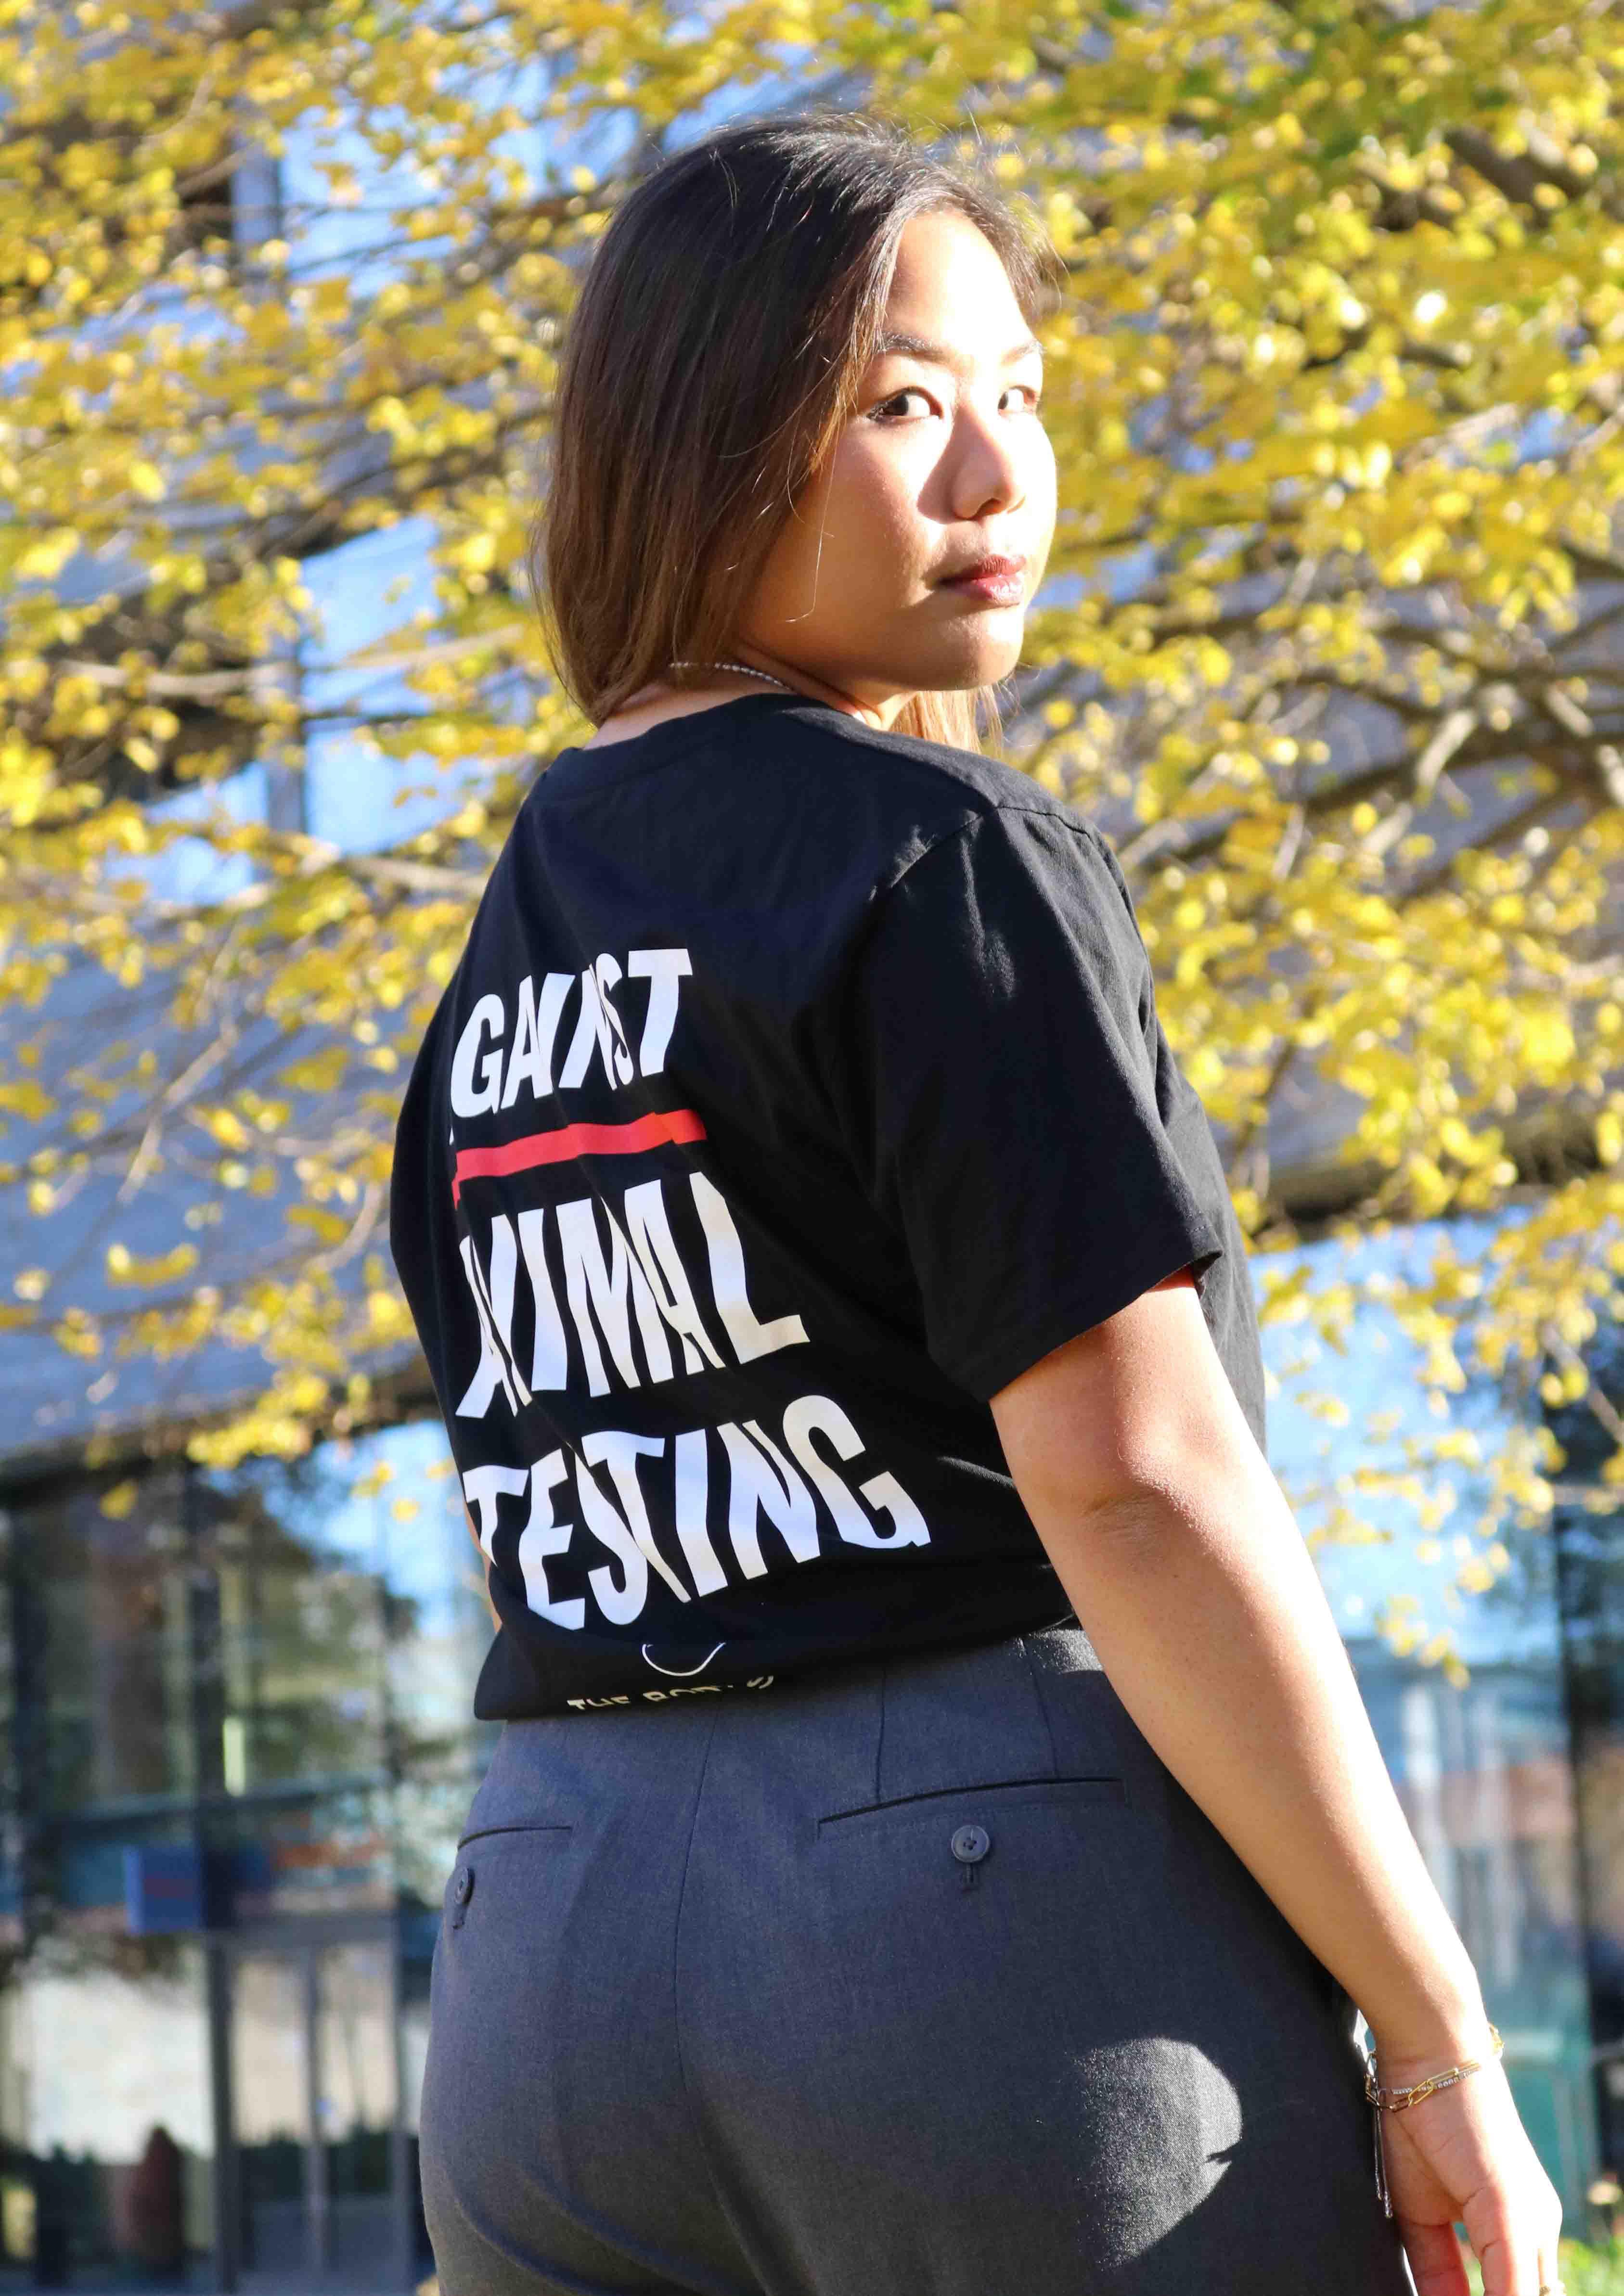 Forever Against Animal Testing T-shirt